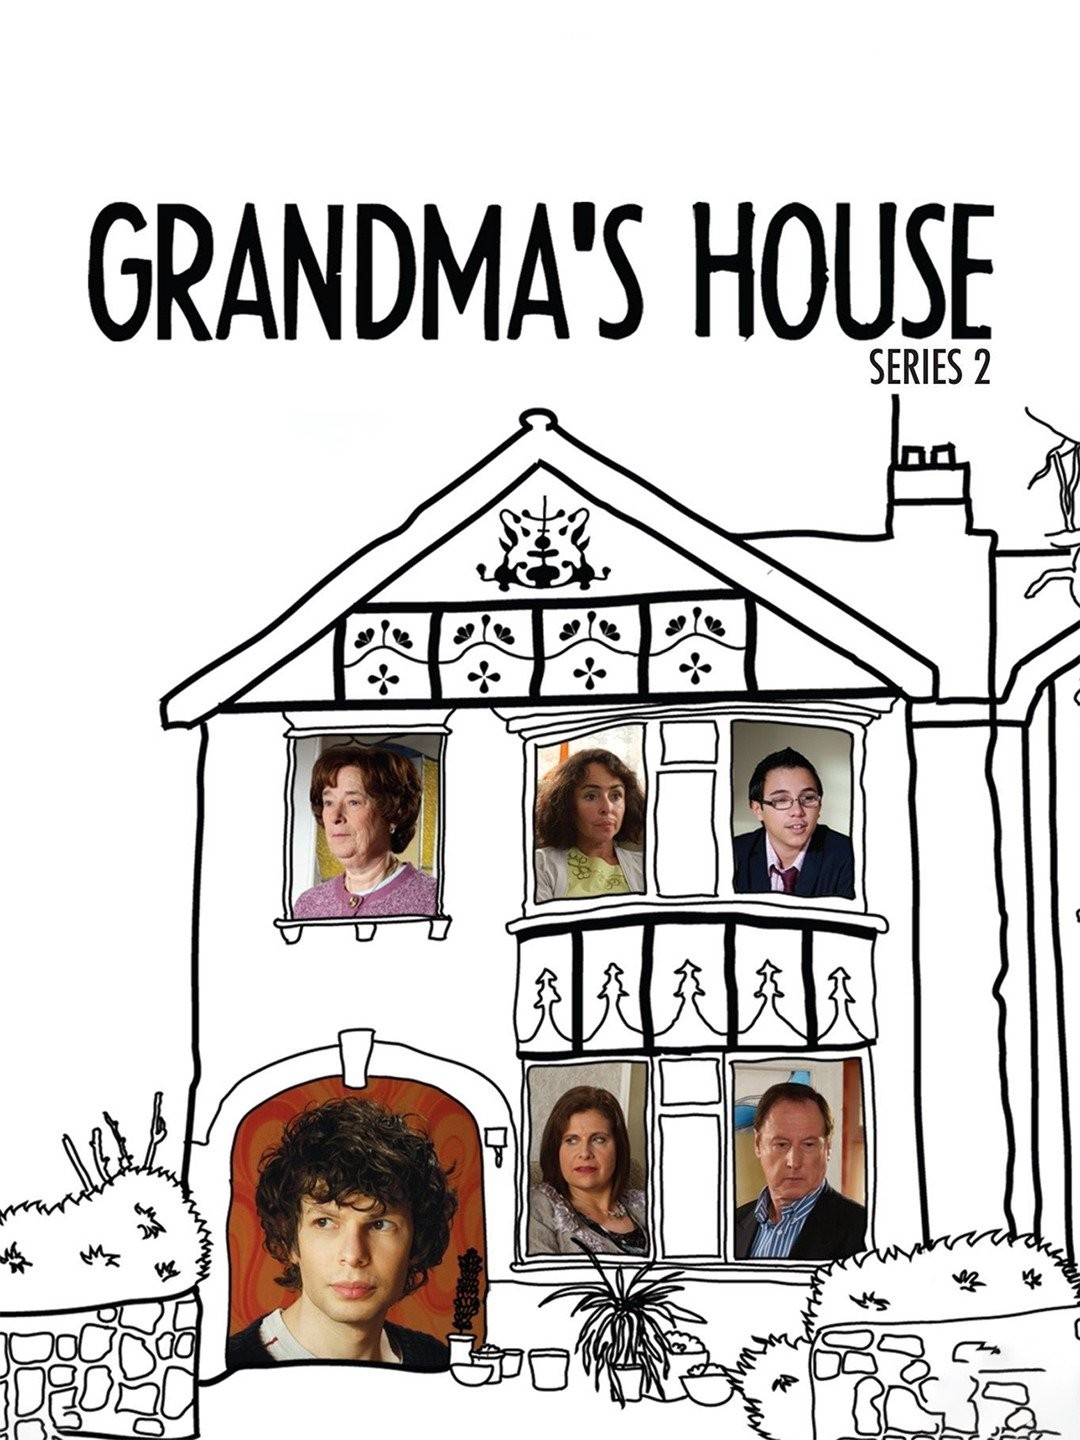 Grandma's House – box set review, TV comedy